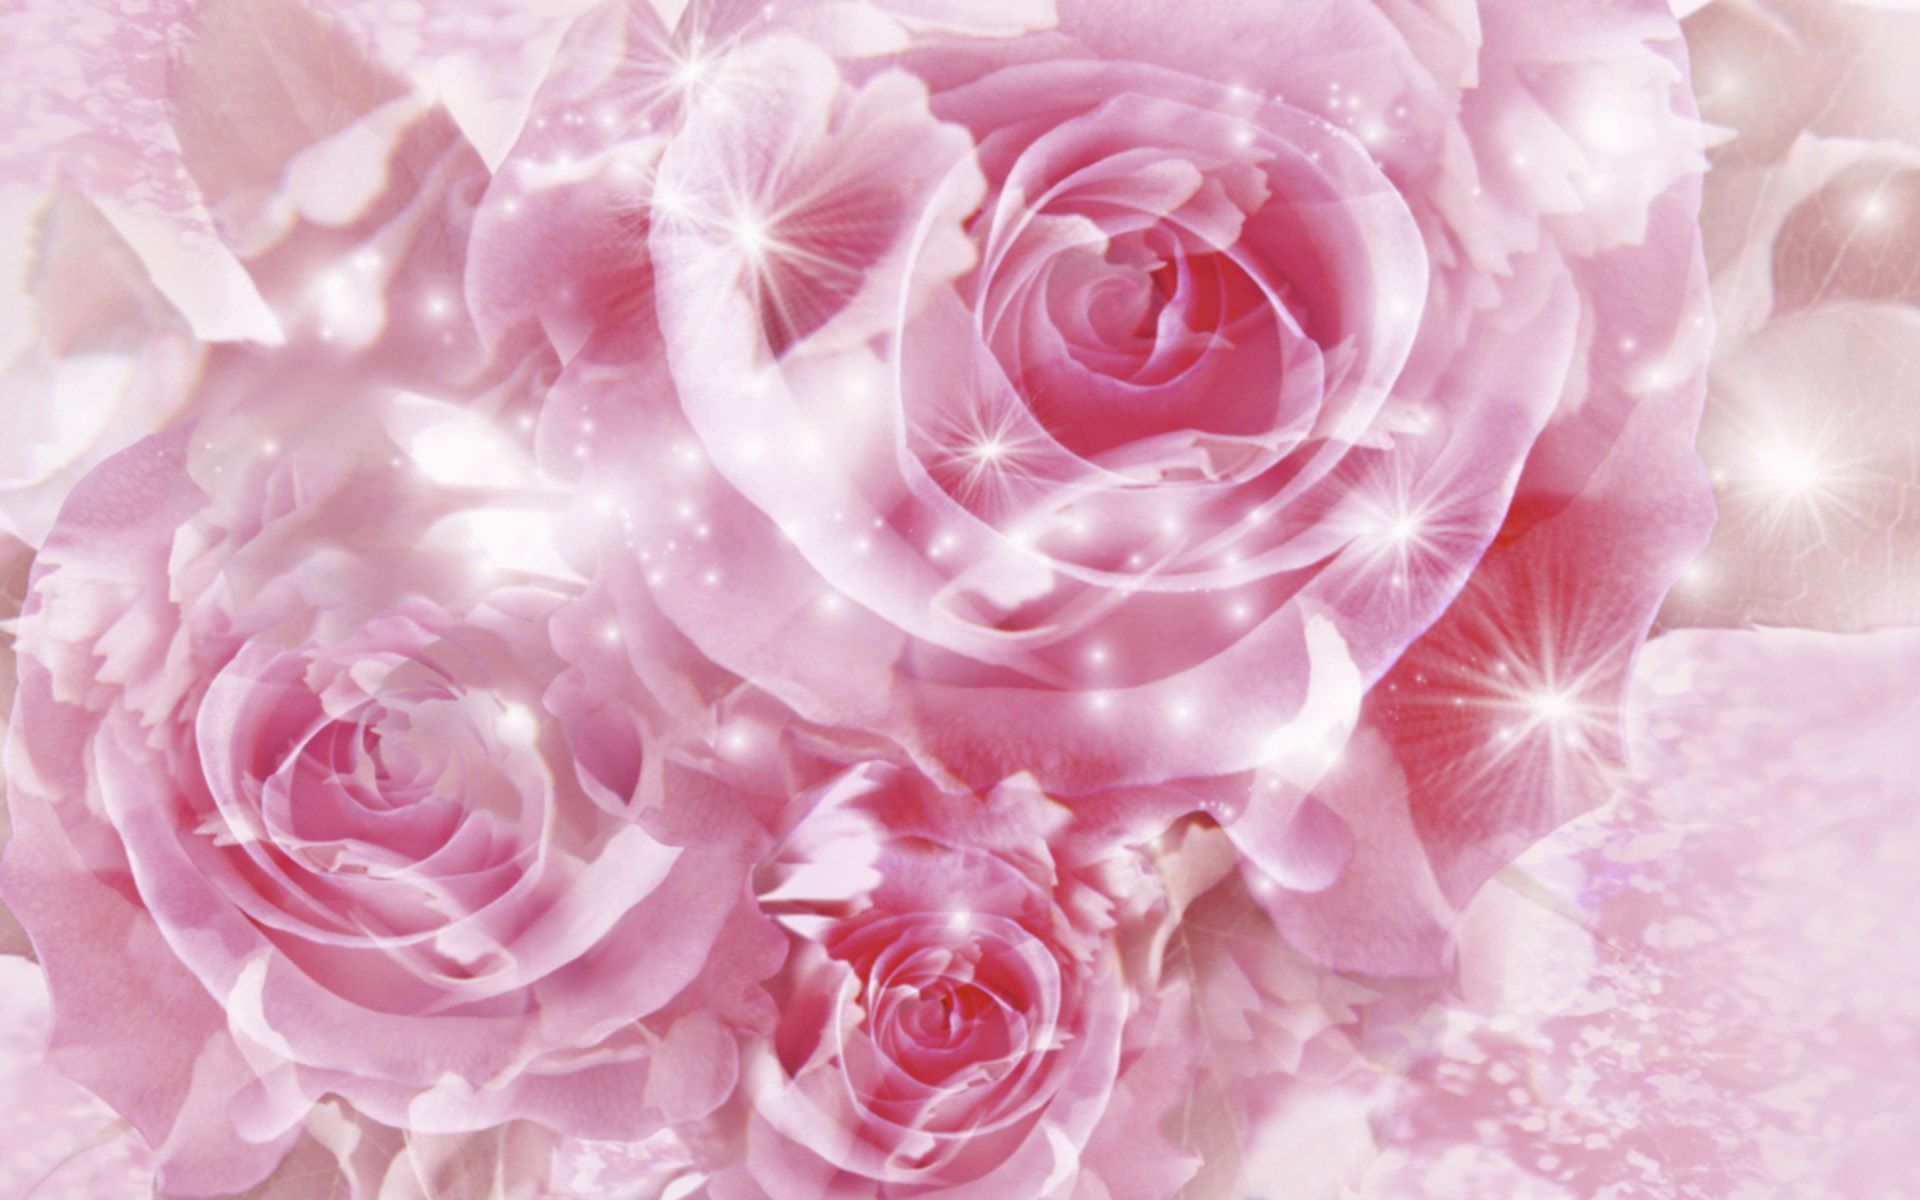 Pretty Pink Roses - Roses Wallpaper (34610924) - Fanpop